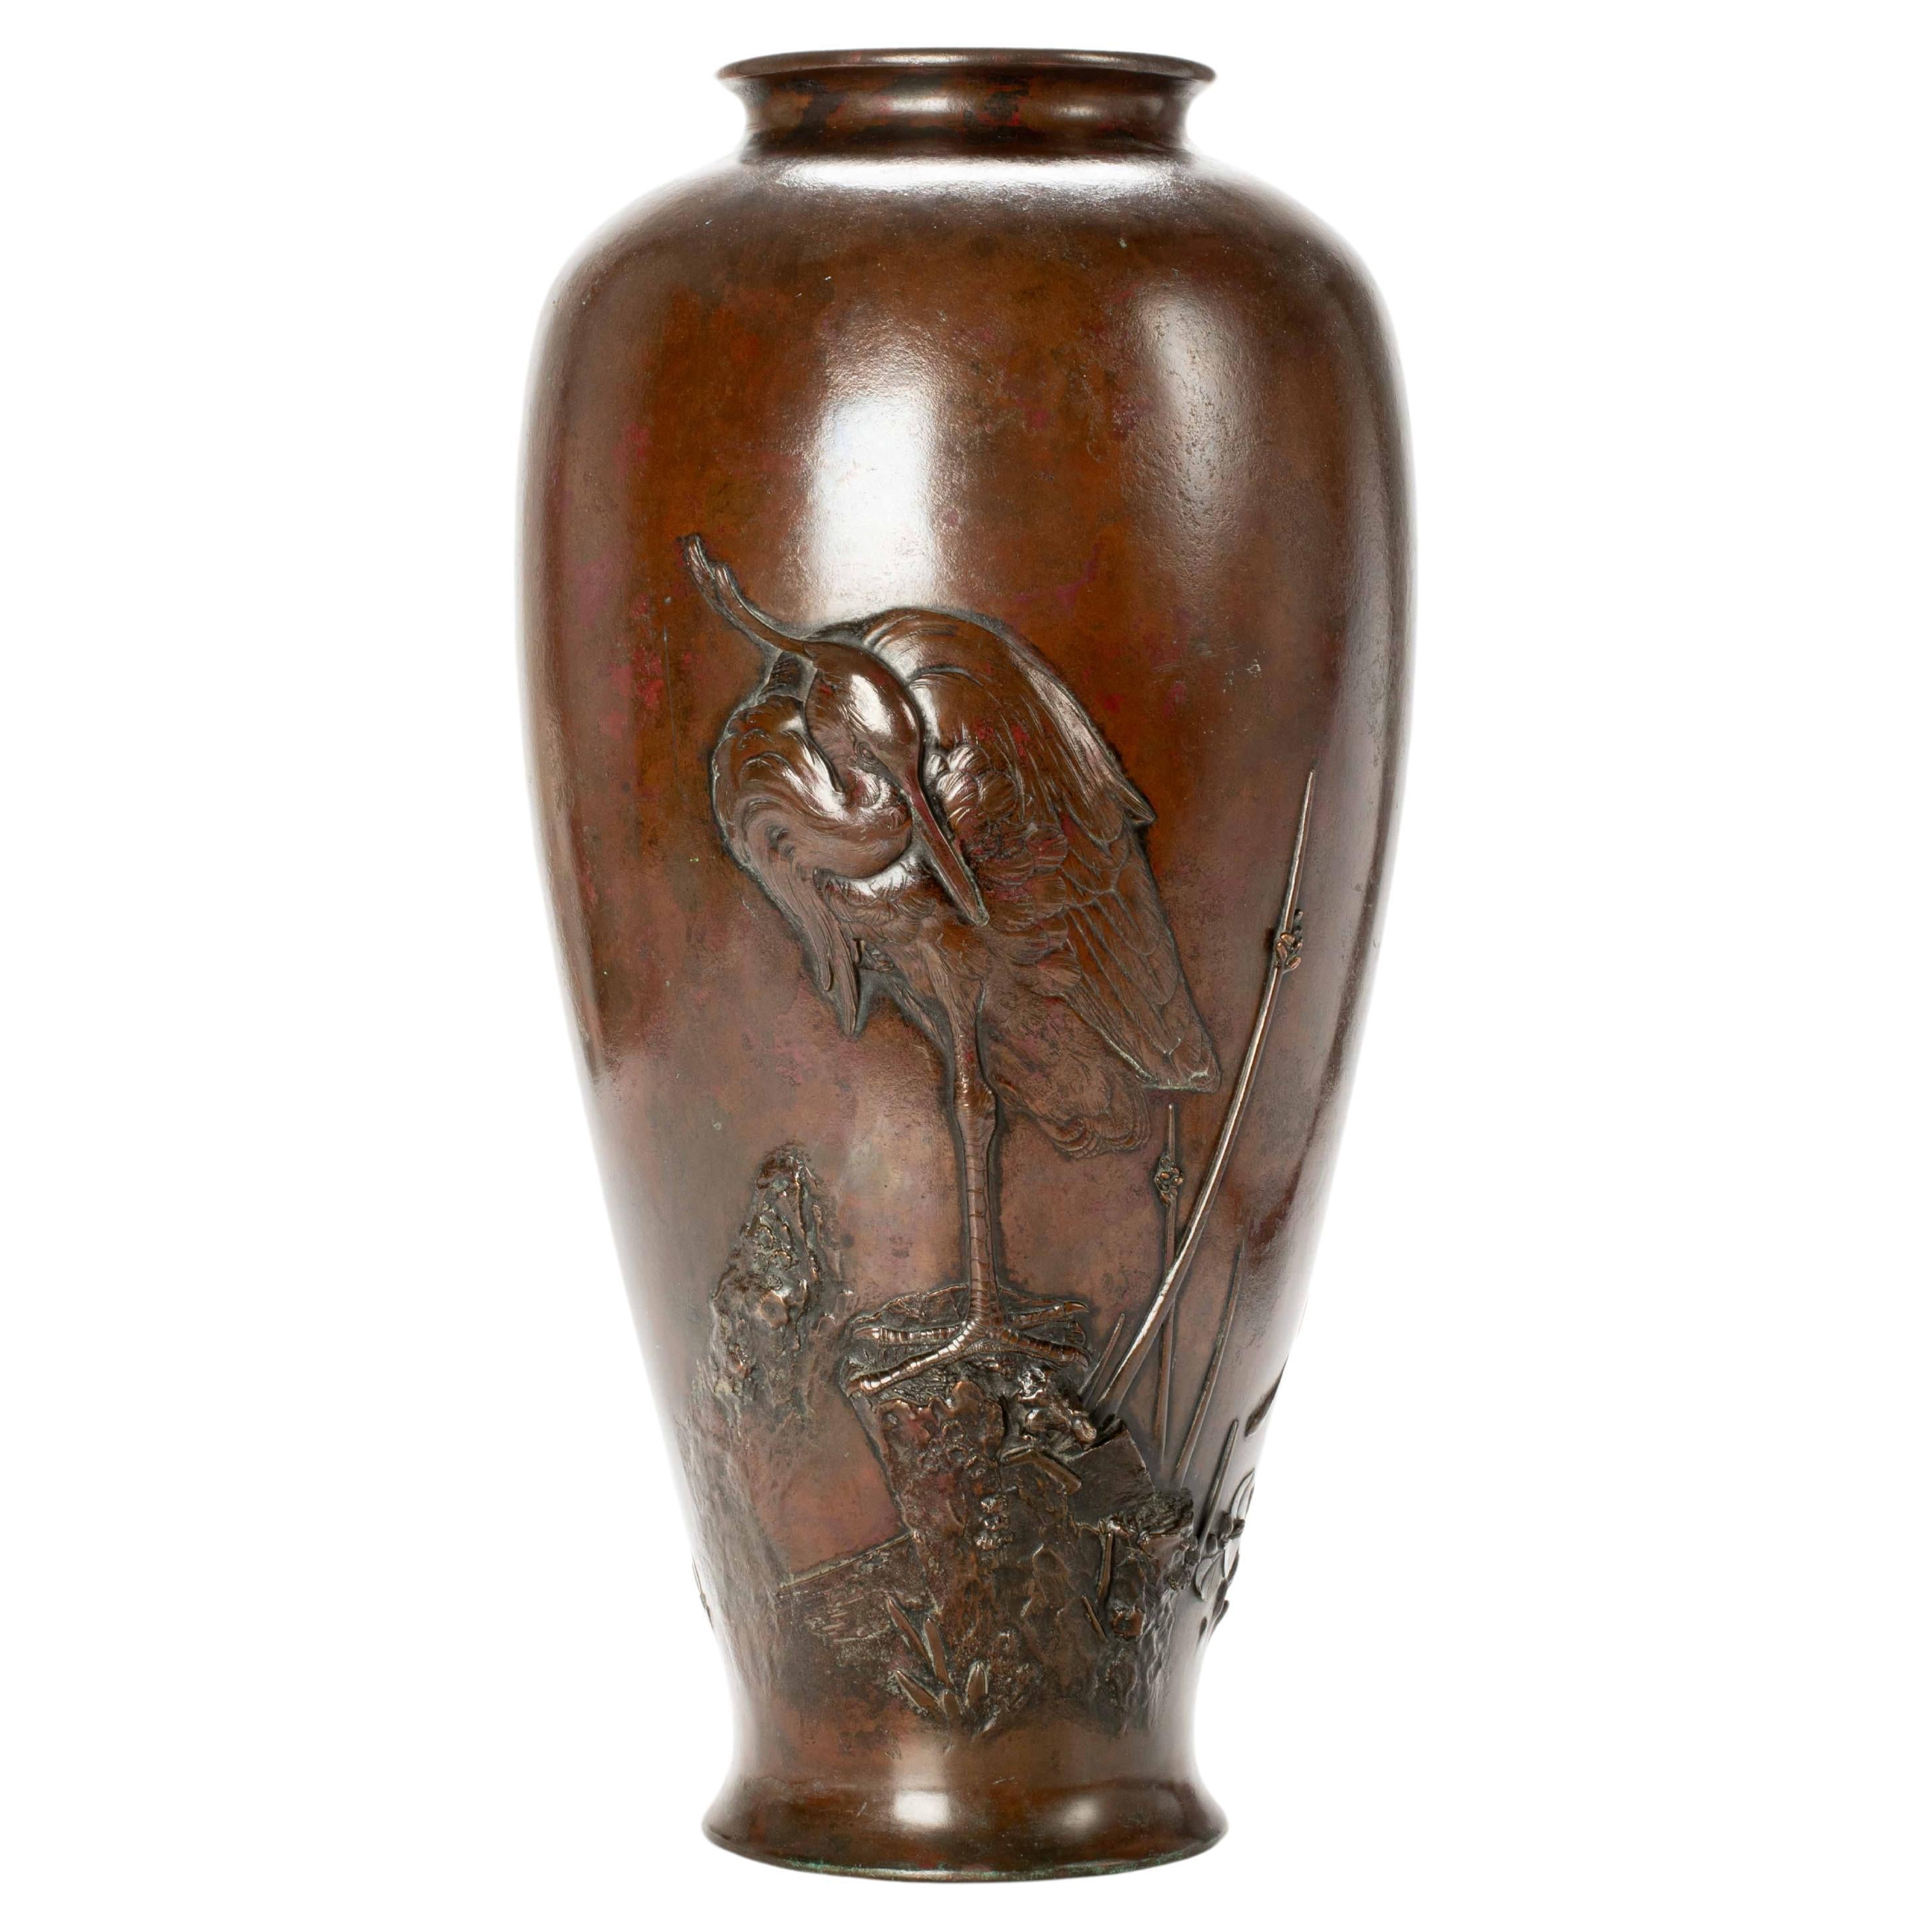 A large bronze vase depicting an egret